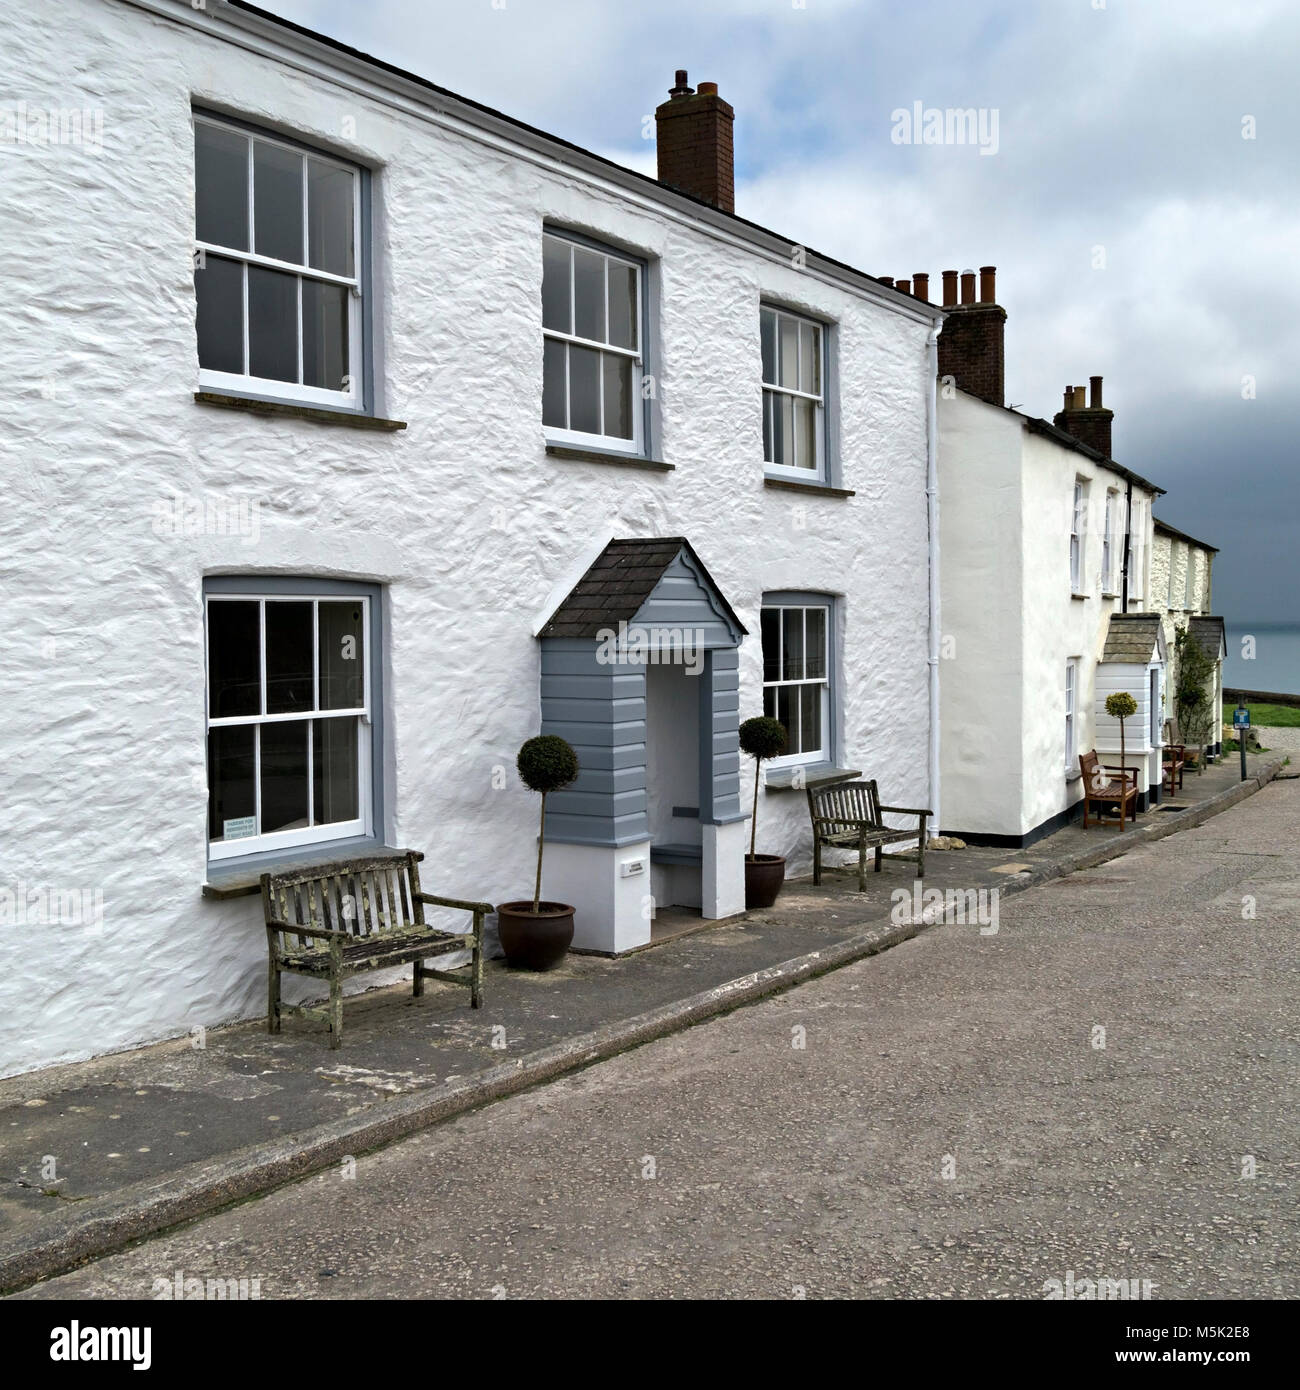 Alte Reihenhaus weiß getünchten harborside Cottages in Charlestown Hafen als Drehort für die BBC TV-Serie Poldark, Cornwall, England, Großbritannien Stockfoto